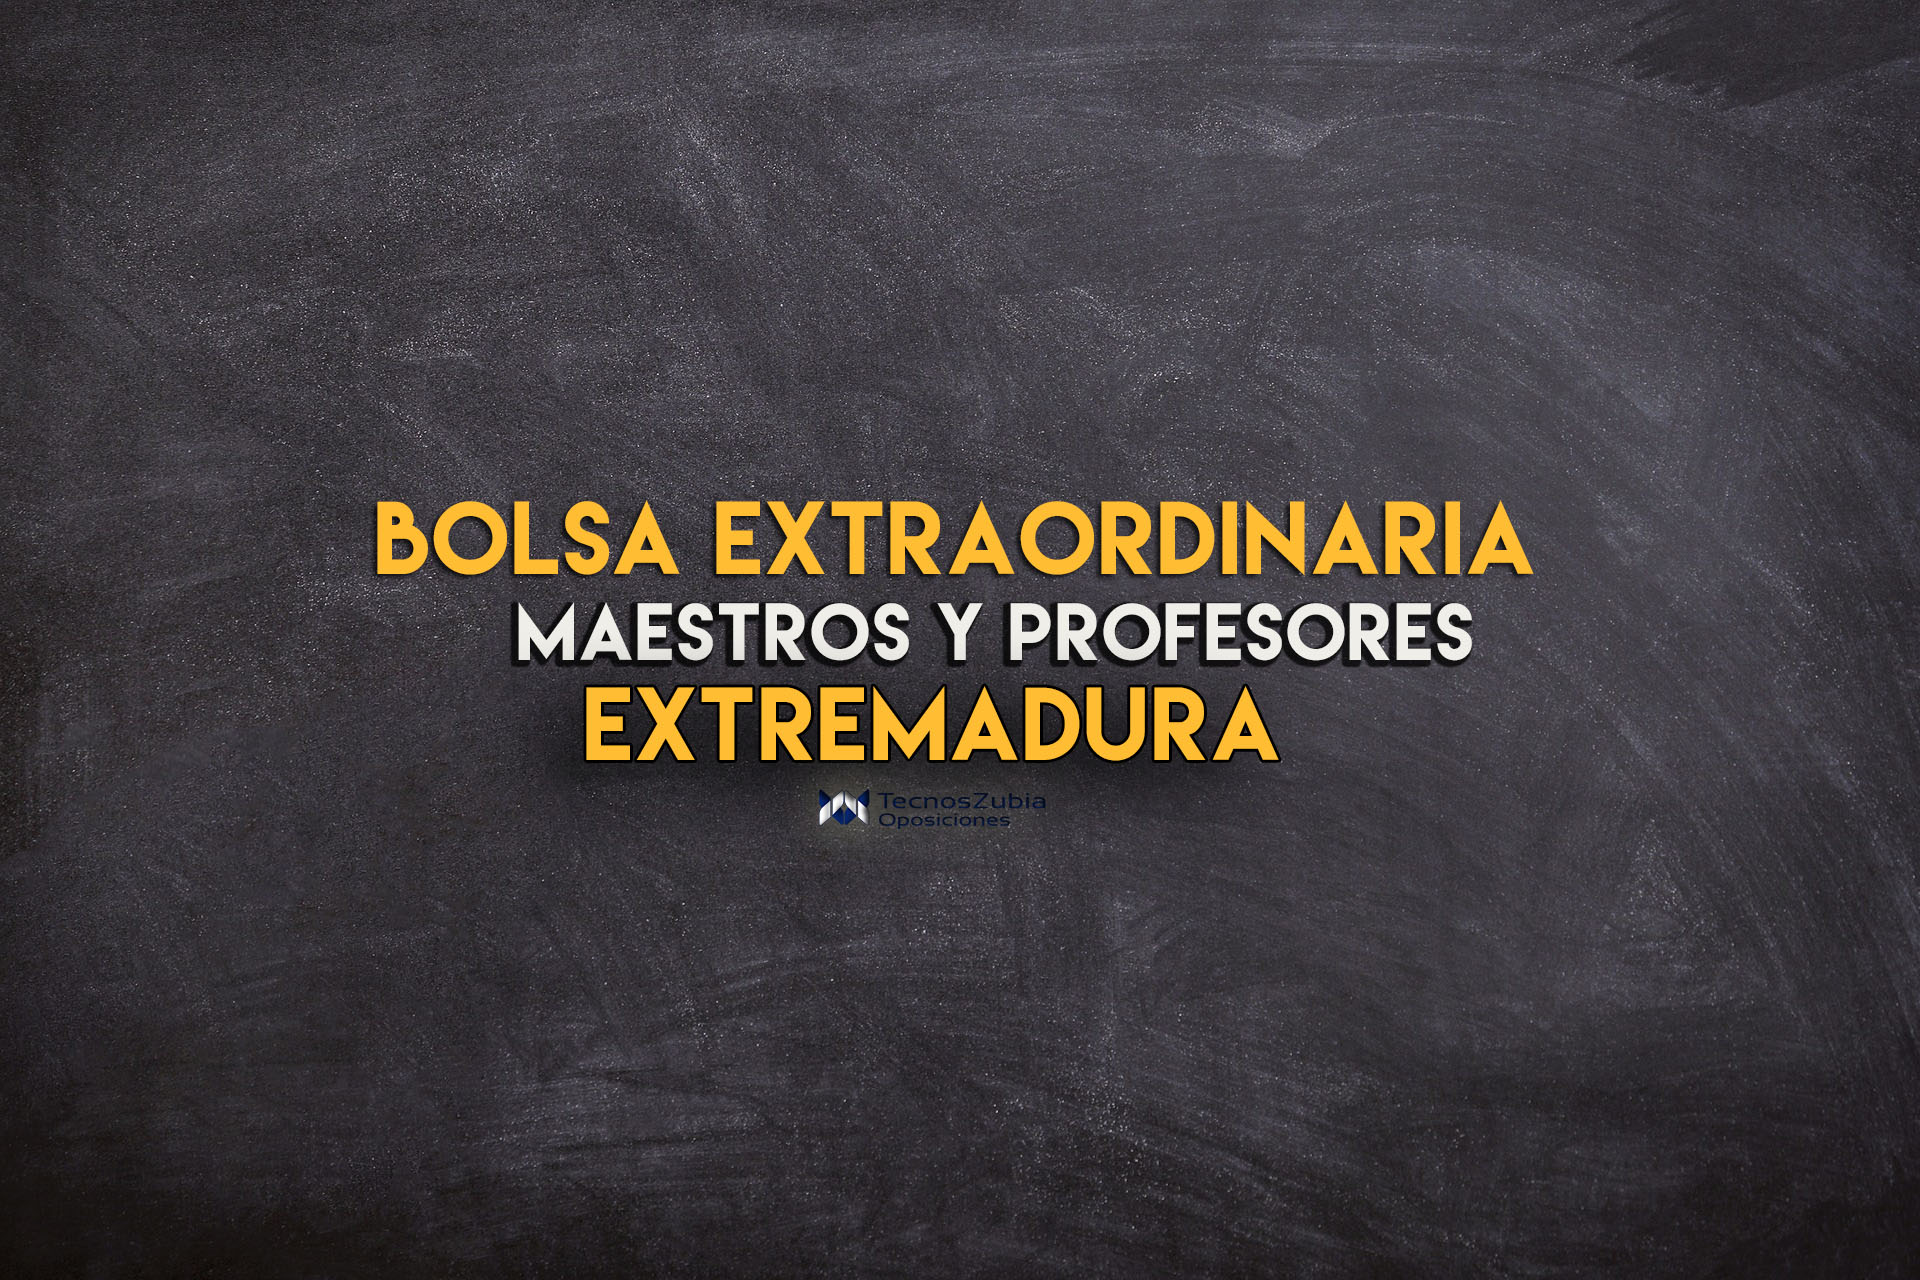 Extremadura: bolsa de trabajo para maestros profesores de Secundaria y FP - TecnosZubia